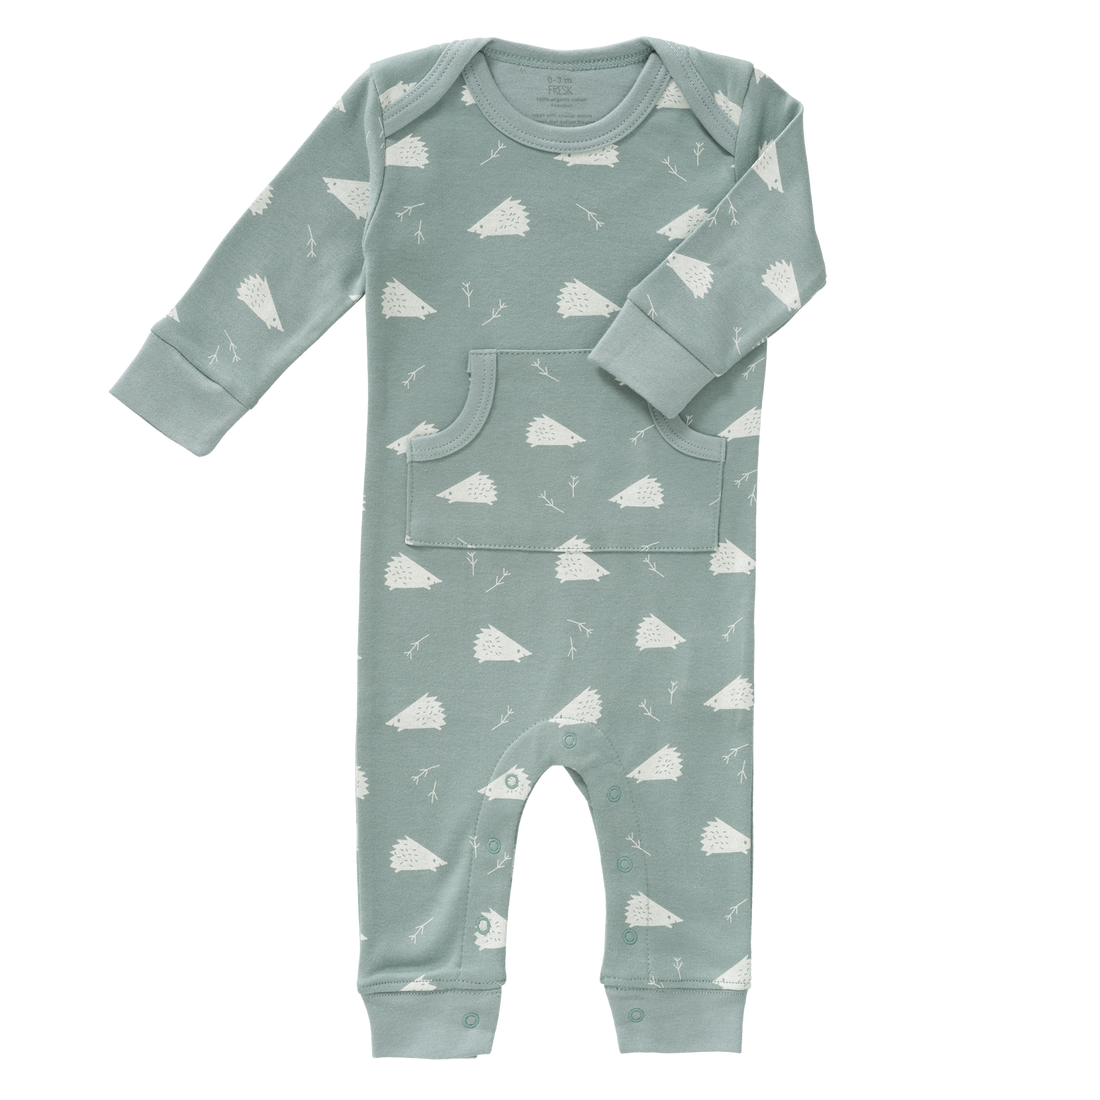 Baby Strampler aus Biobaumwolle in mint mit Igelprint, fair produziert von Fresk